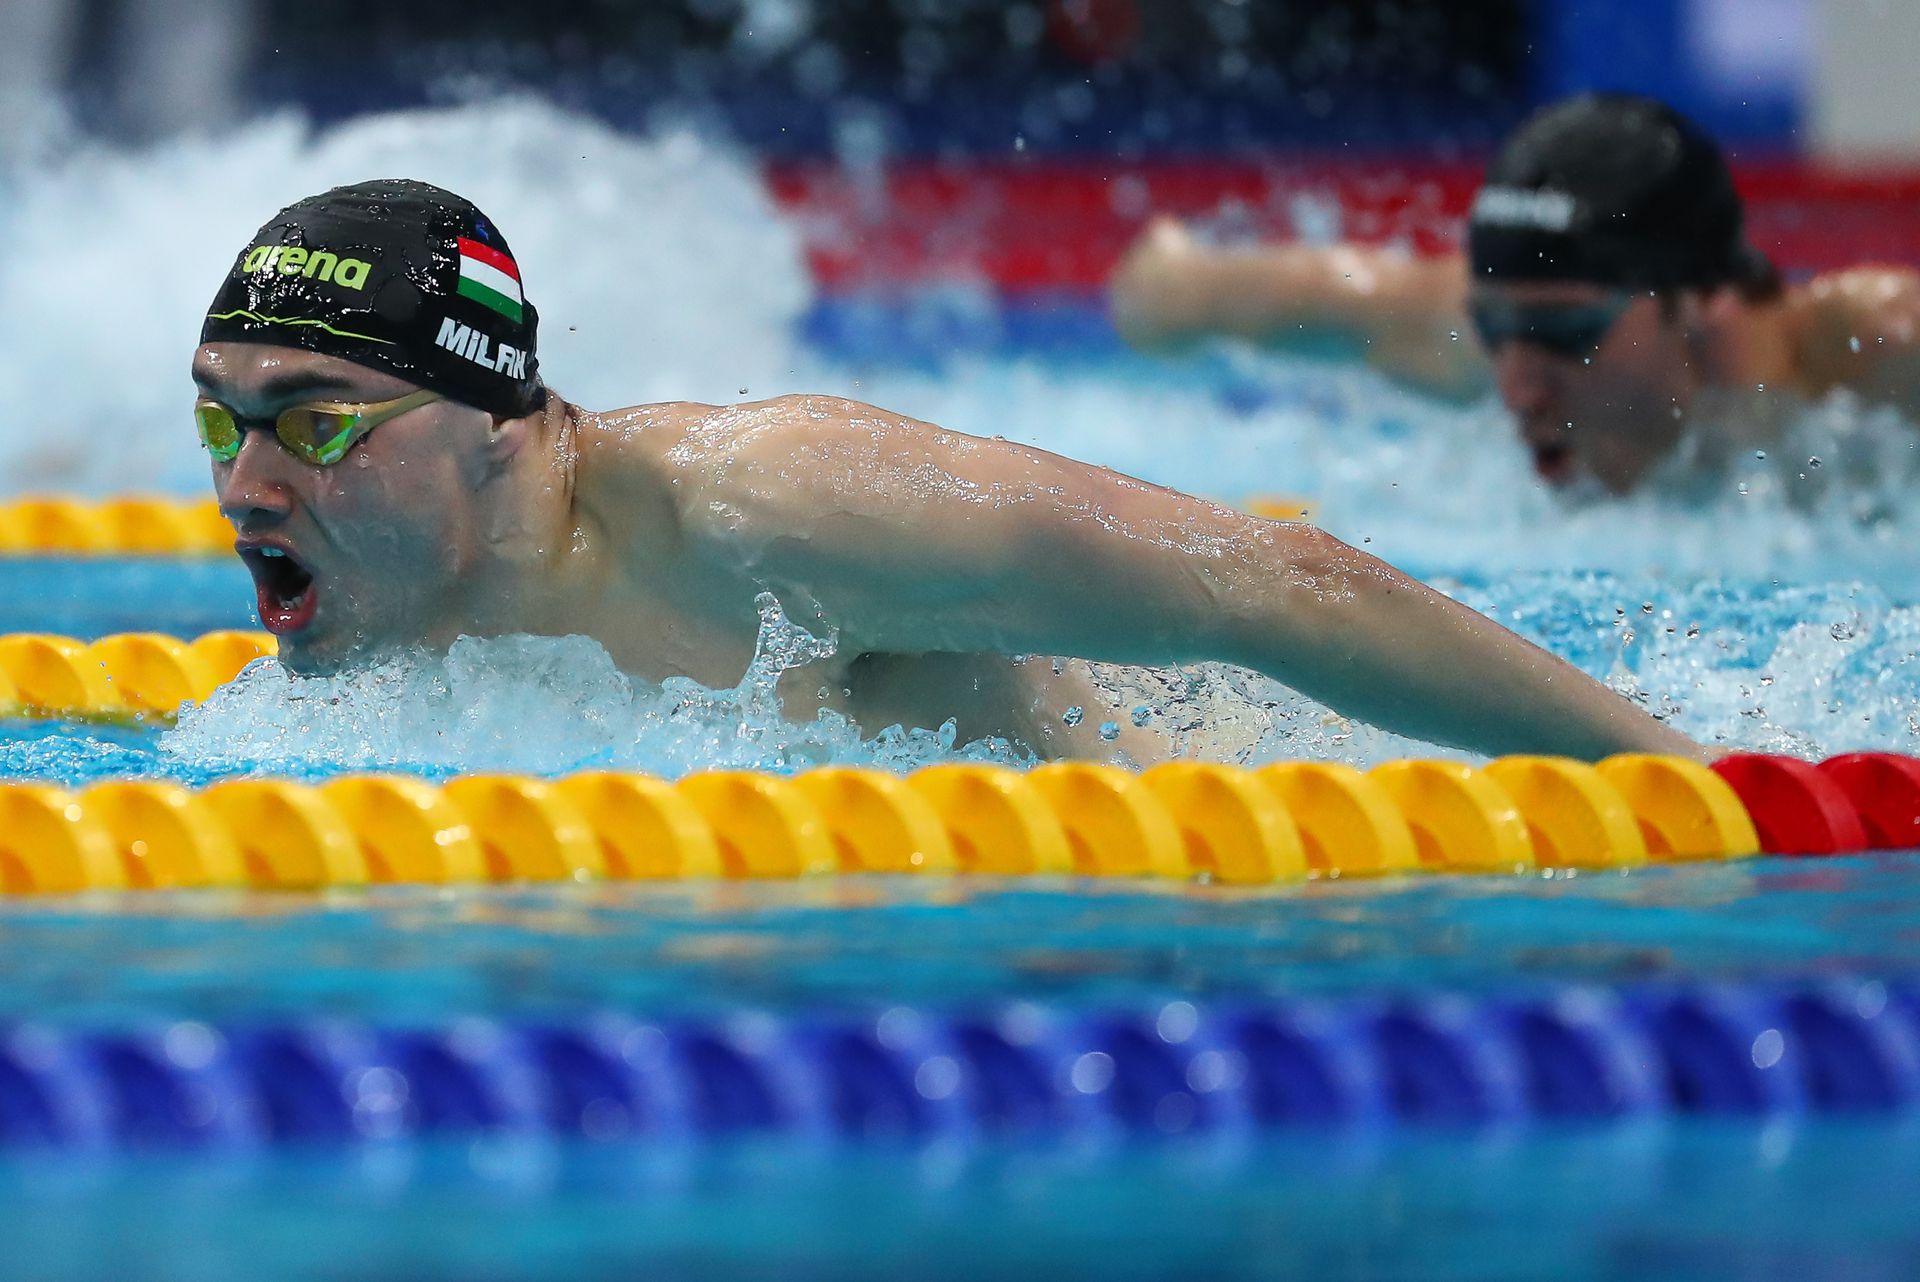 Ezzel az idővel győzött Milák az ob-n. A 23-szoros olimpiai bajnok Michael Phelps soha nem úszott ilyen jó időt... /Fotó: Derencsényi István